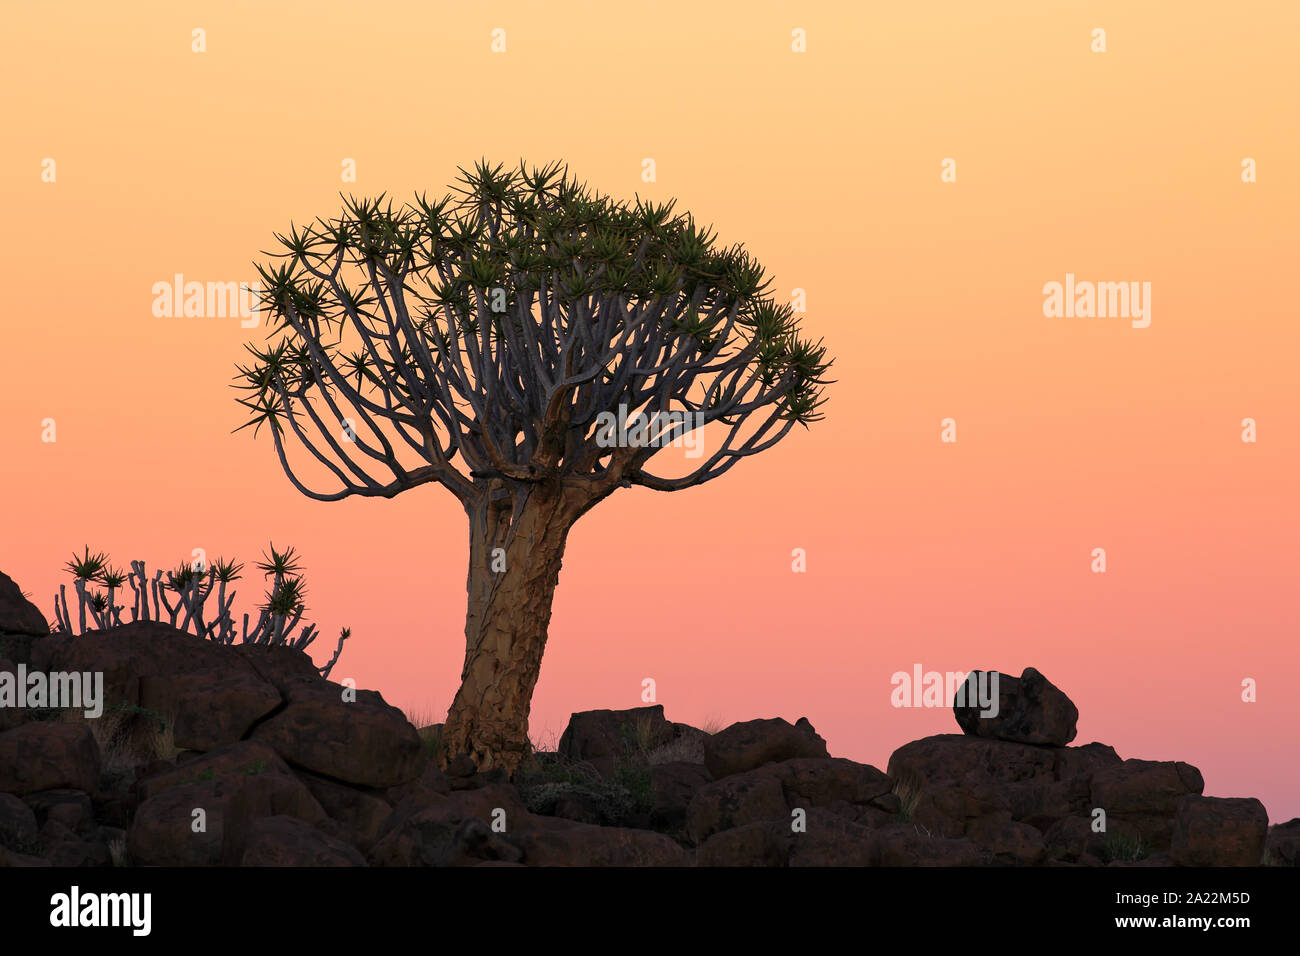 Silhouette einer köcherbaum (Aloe dichotoma) und Felsen bei Sonnenuntergang, Namibia Stockfoto